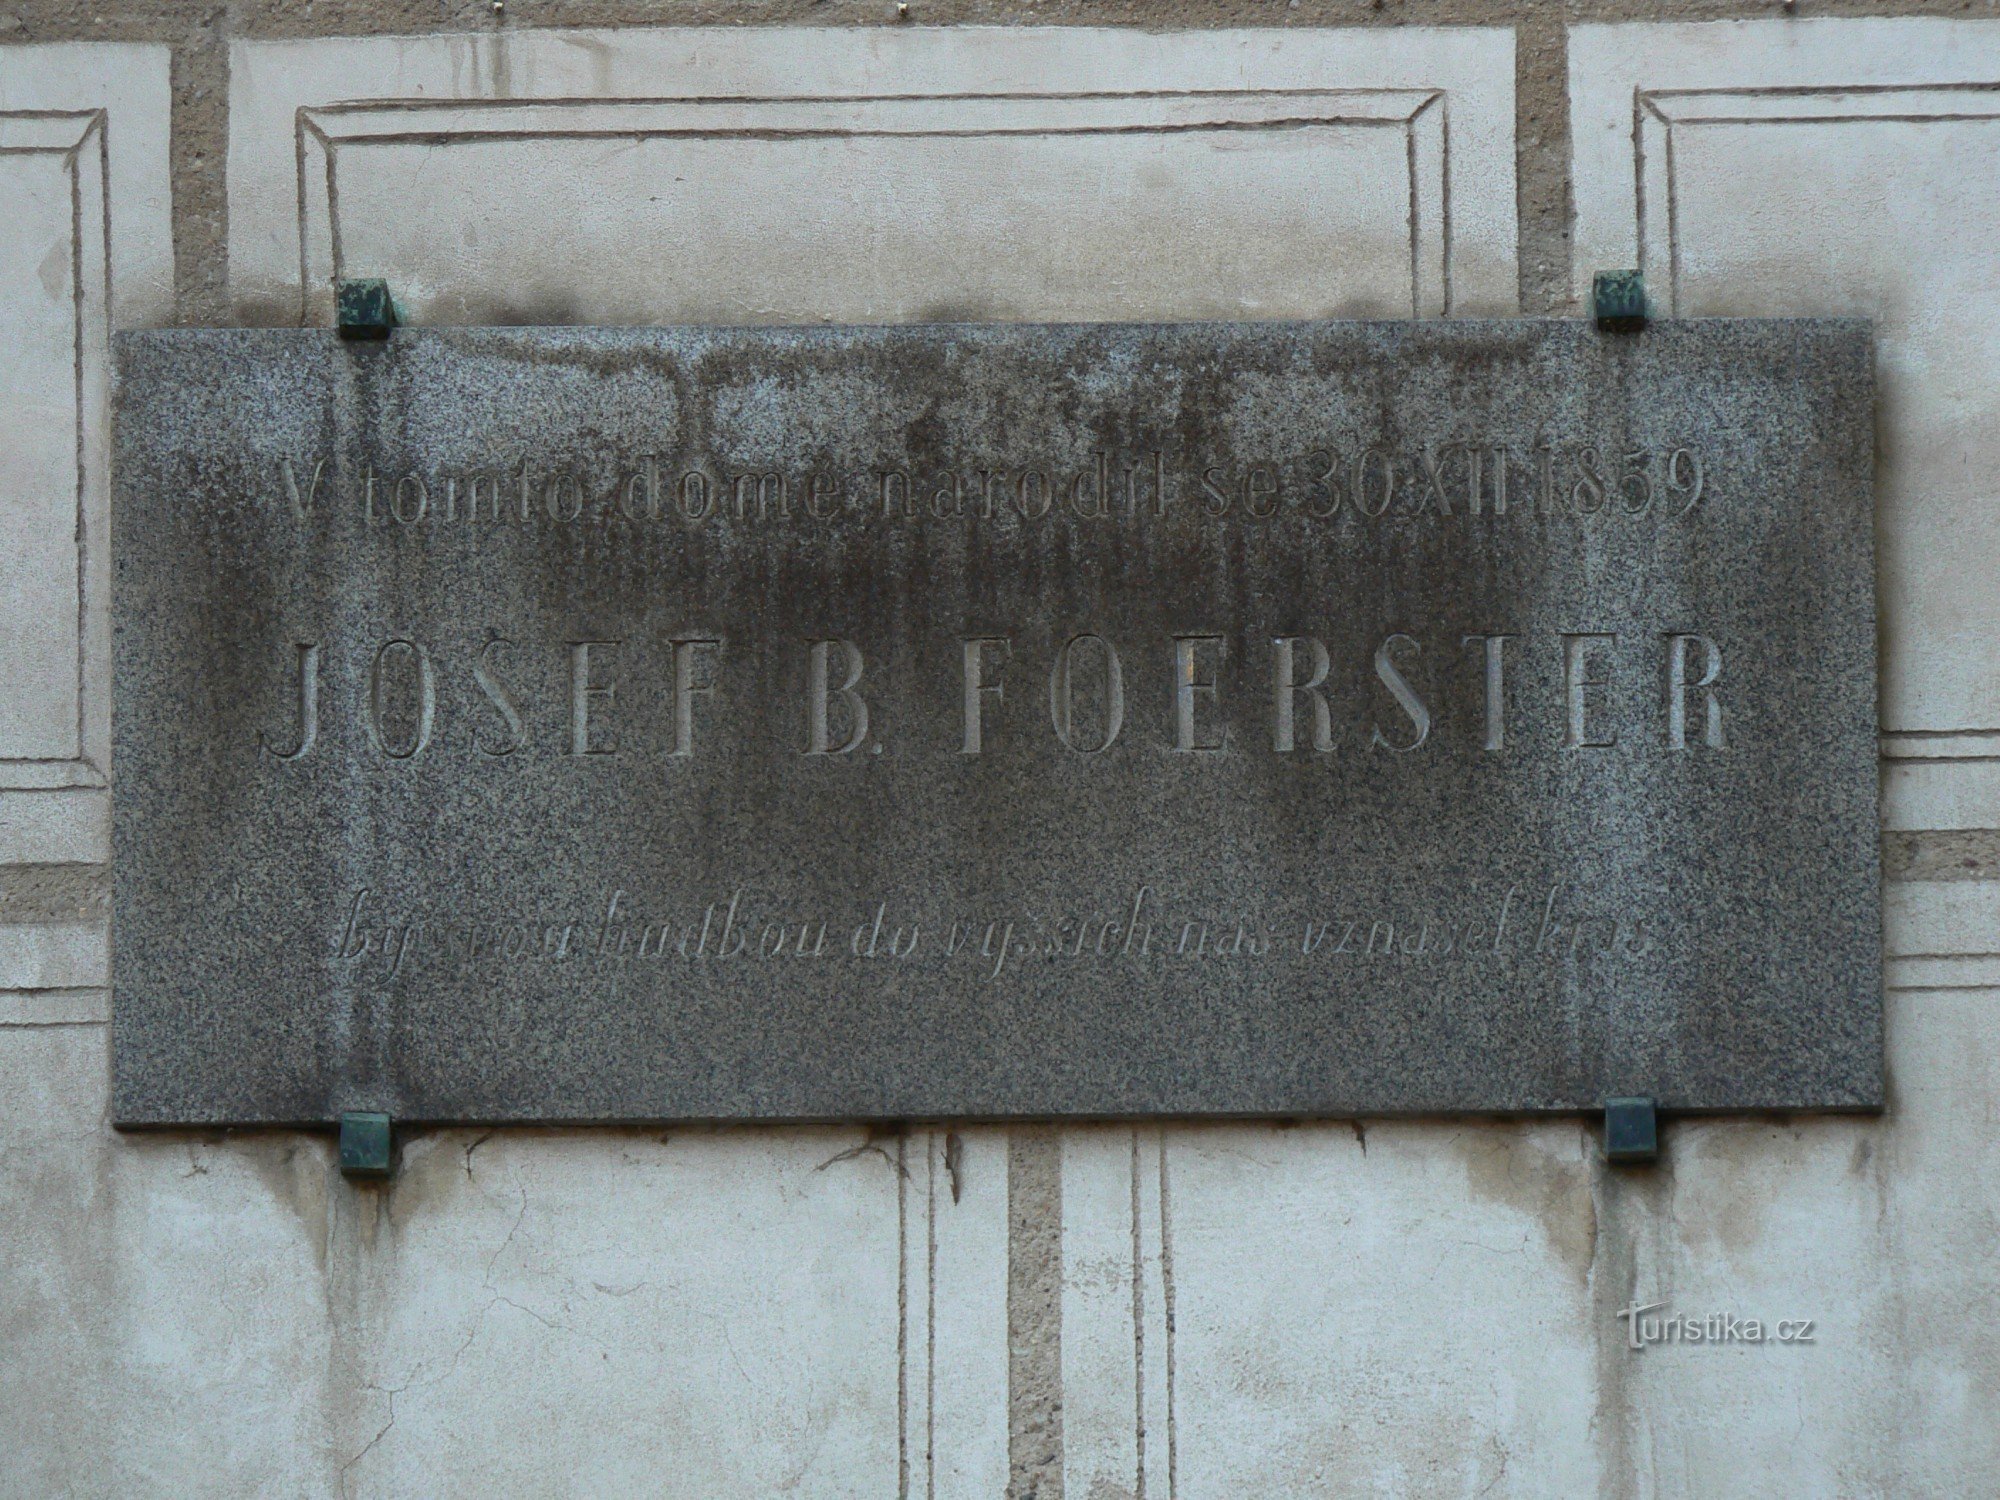 Spomen ploča Josef B. Foerster